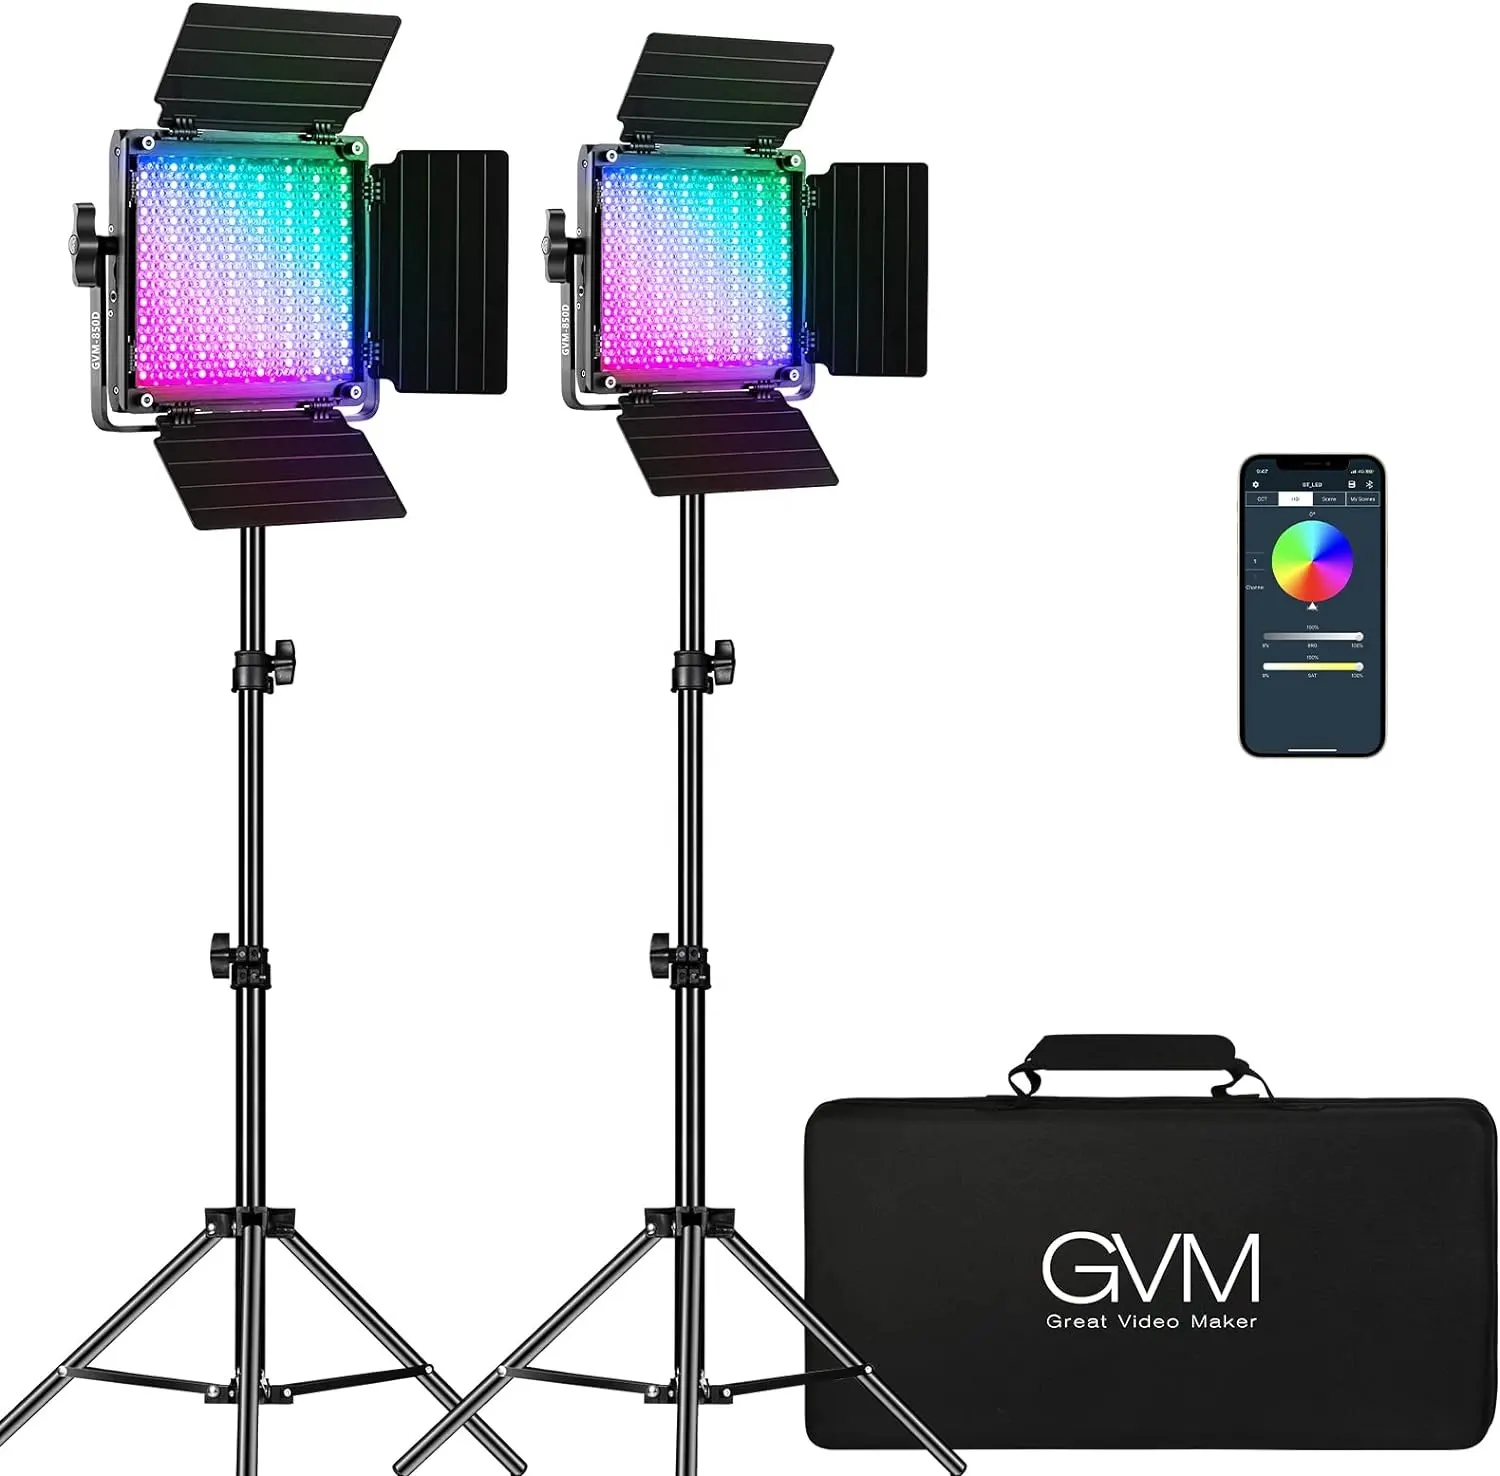 GVM RGB LED pannello luce Video, illuminazione fotografia con controllo APP, Kit di illuminazione Video 800D per YouTube Studio, pacchetti 97,2